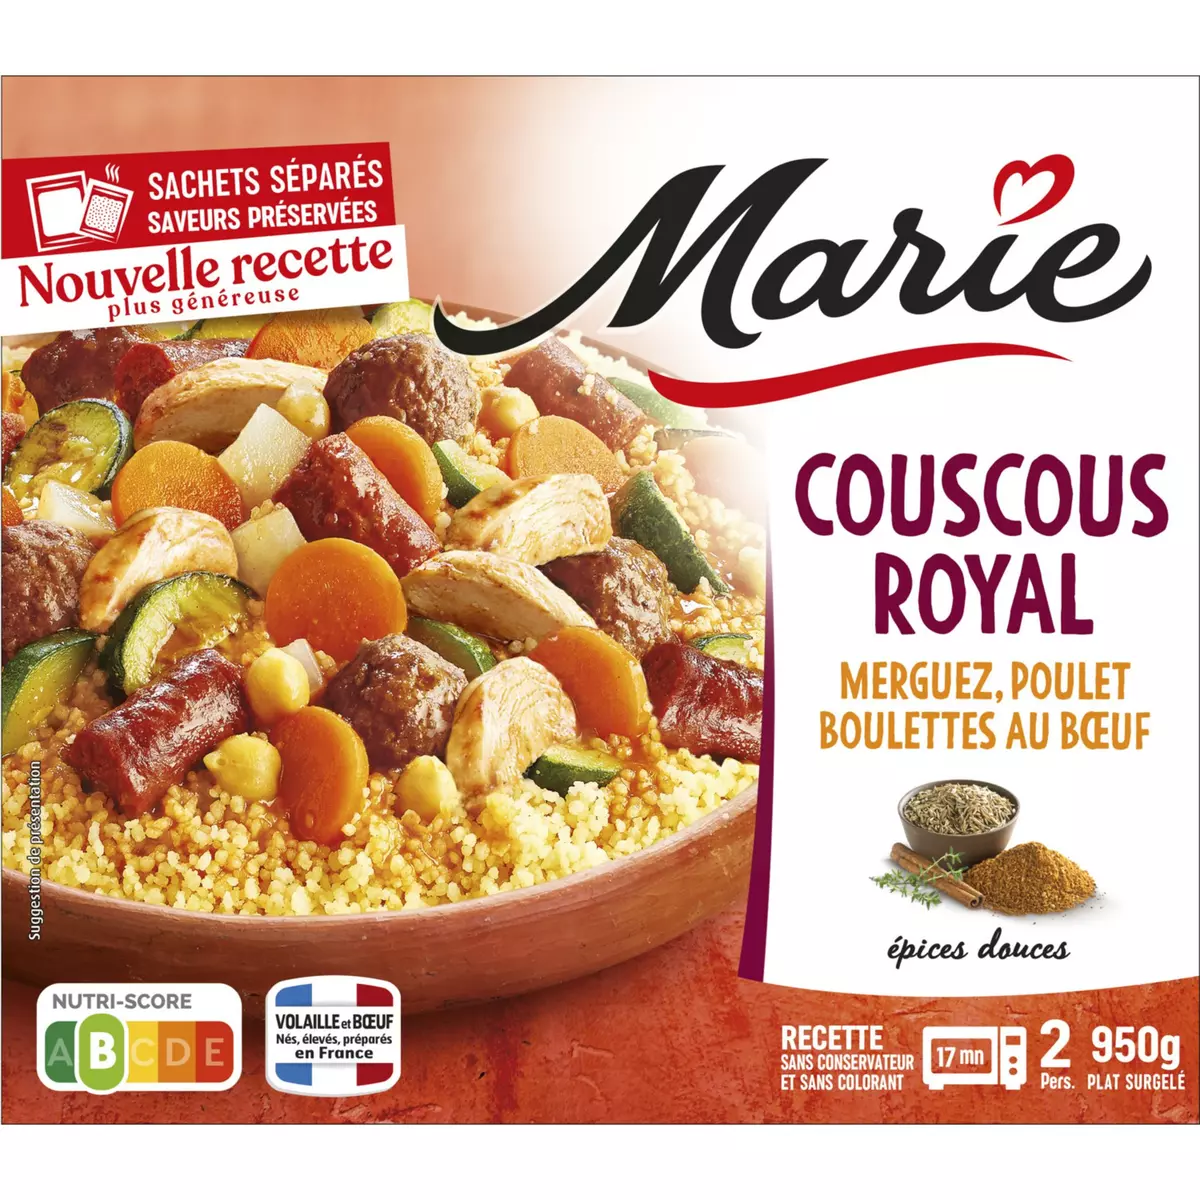 MARIE Couscous royal merguez poulet boulette au bœuf 2 parts  950g